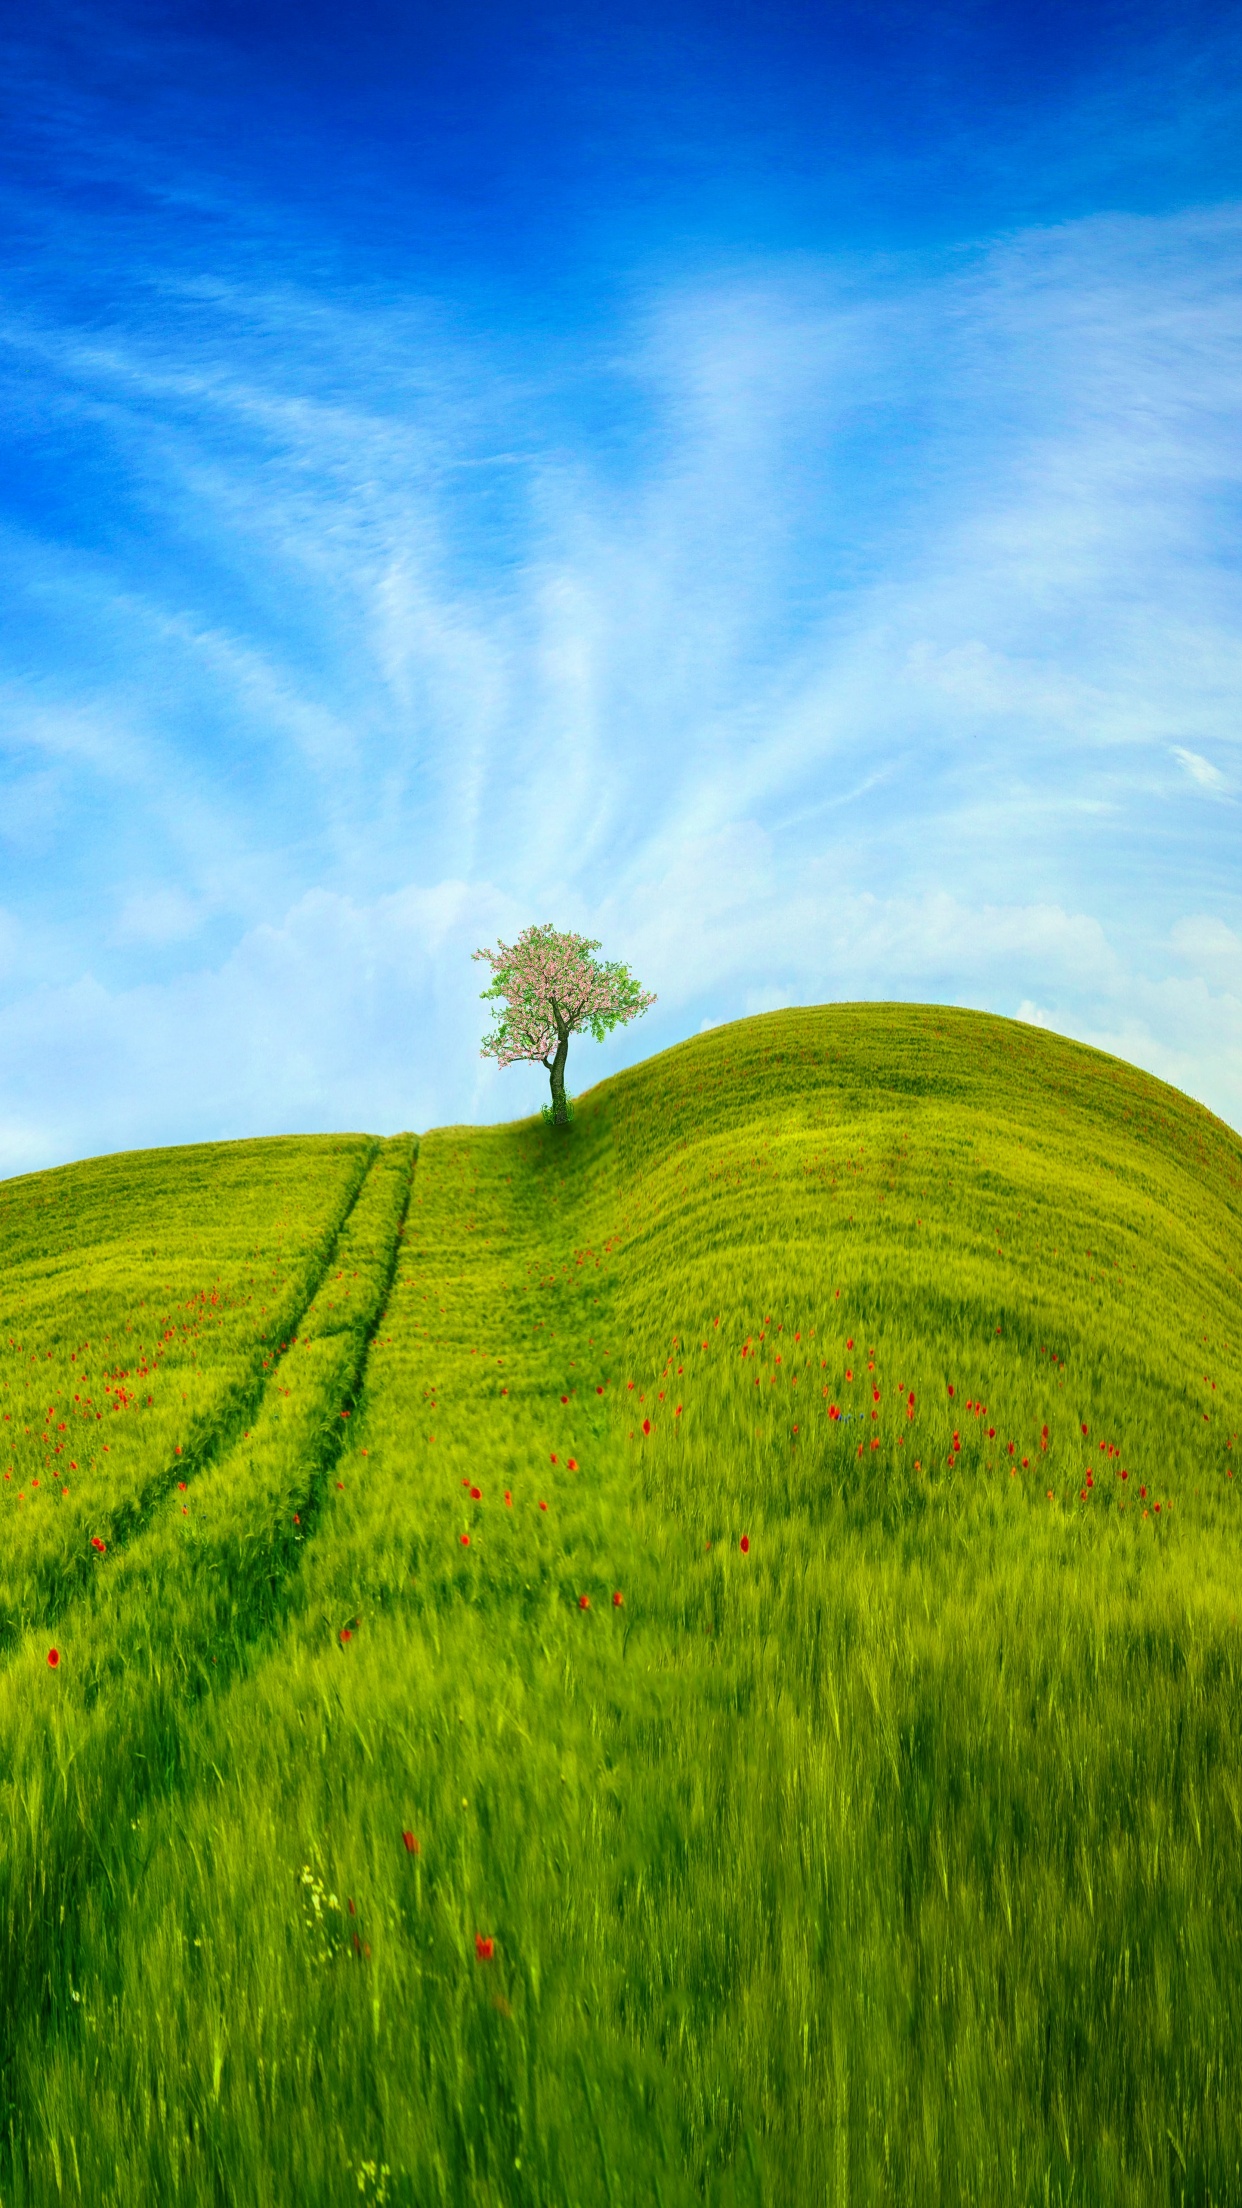 Grass Landscape Wallpaper 4K, Blue Sky, Tree, Clear sky, Beautiful